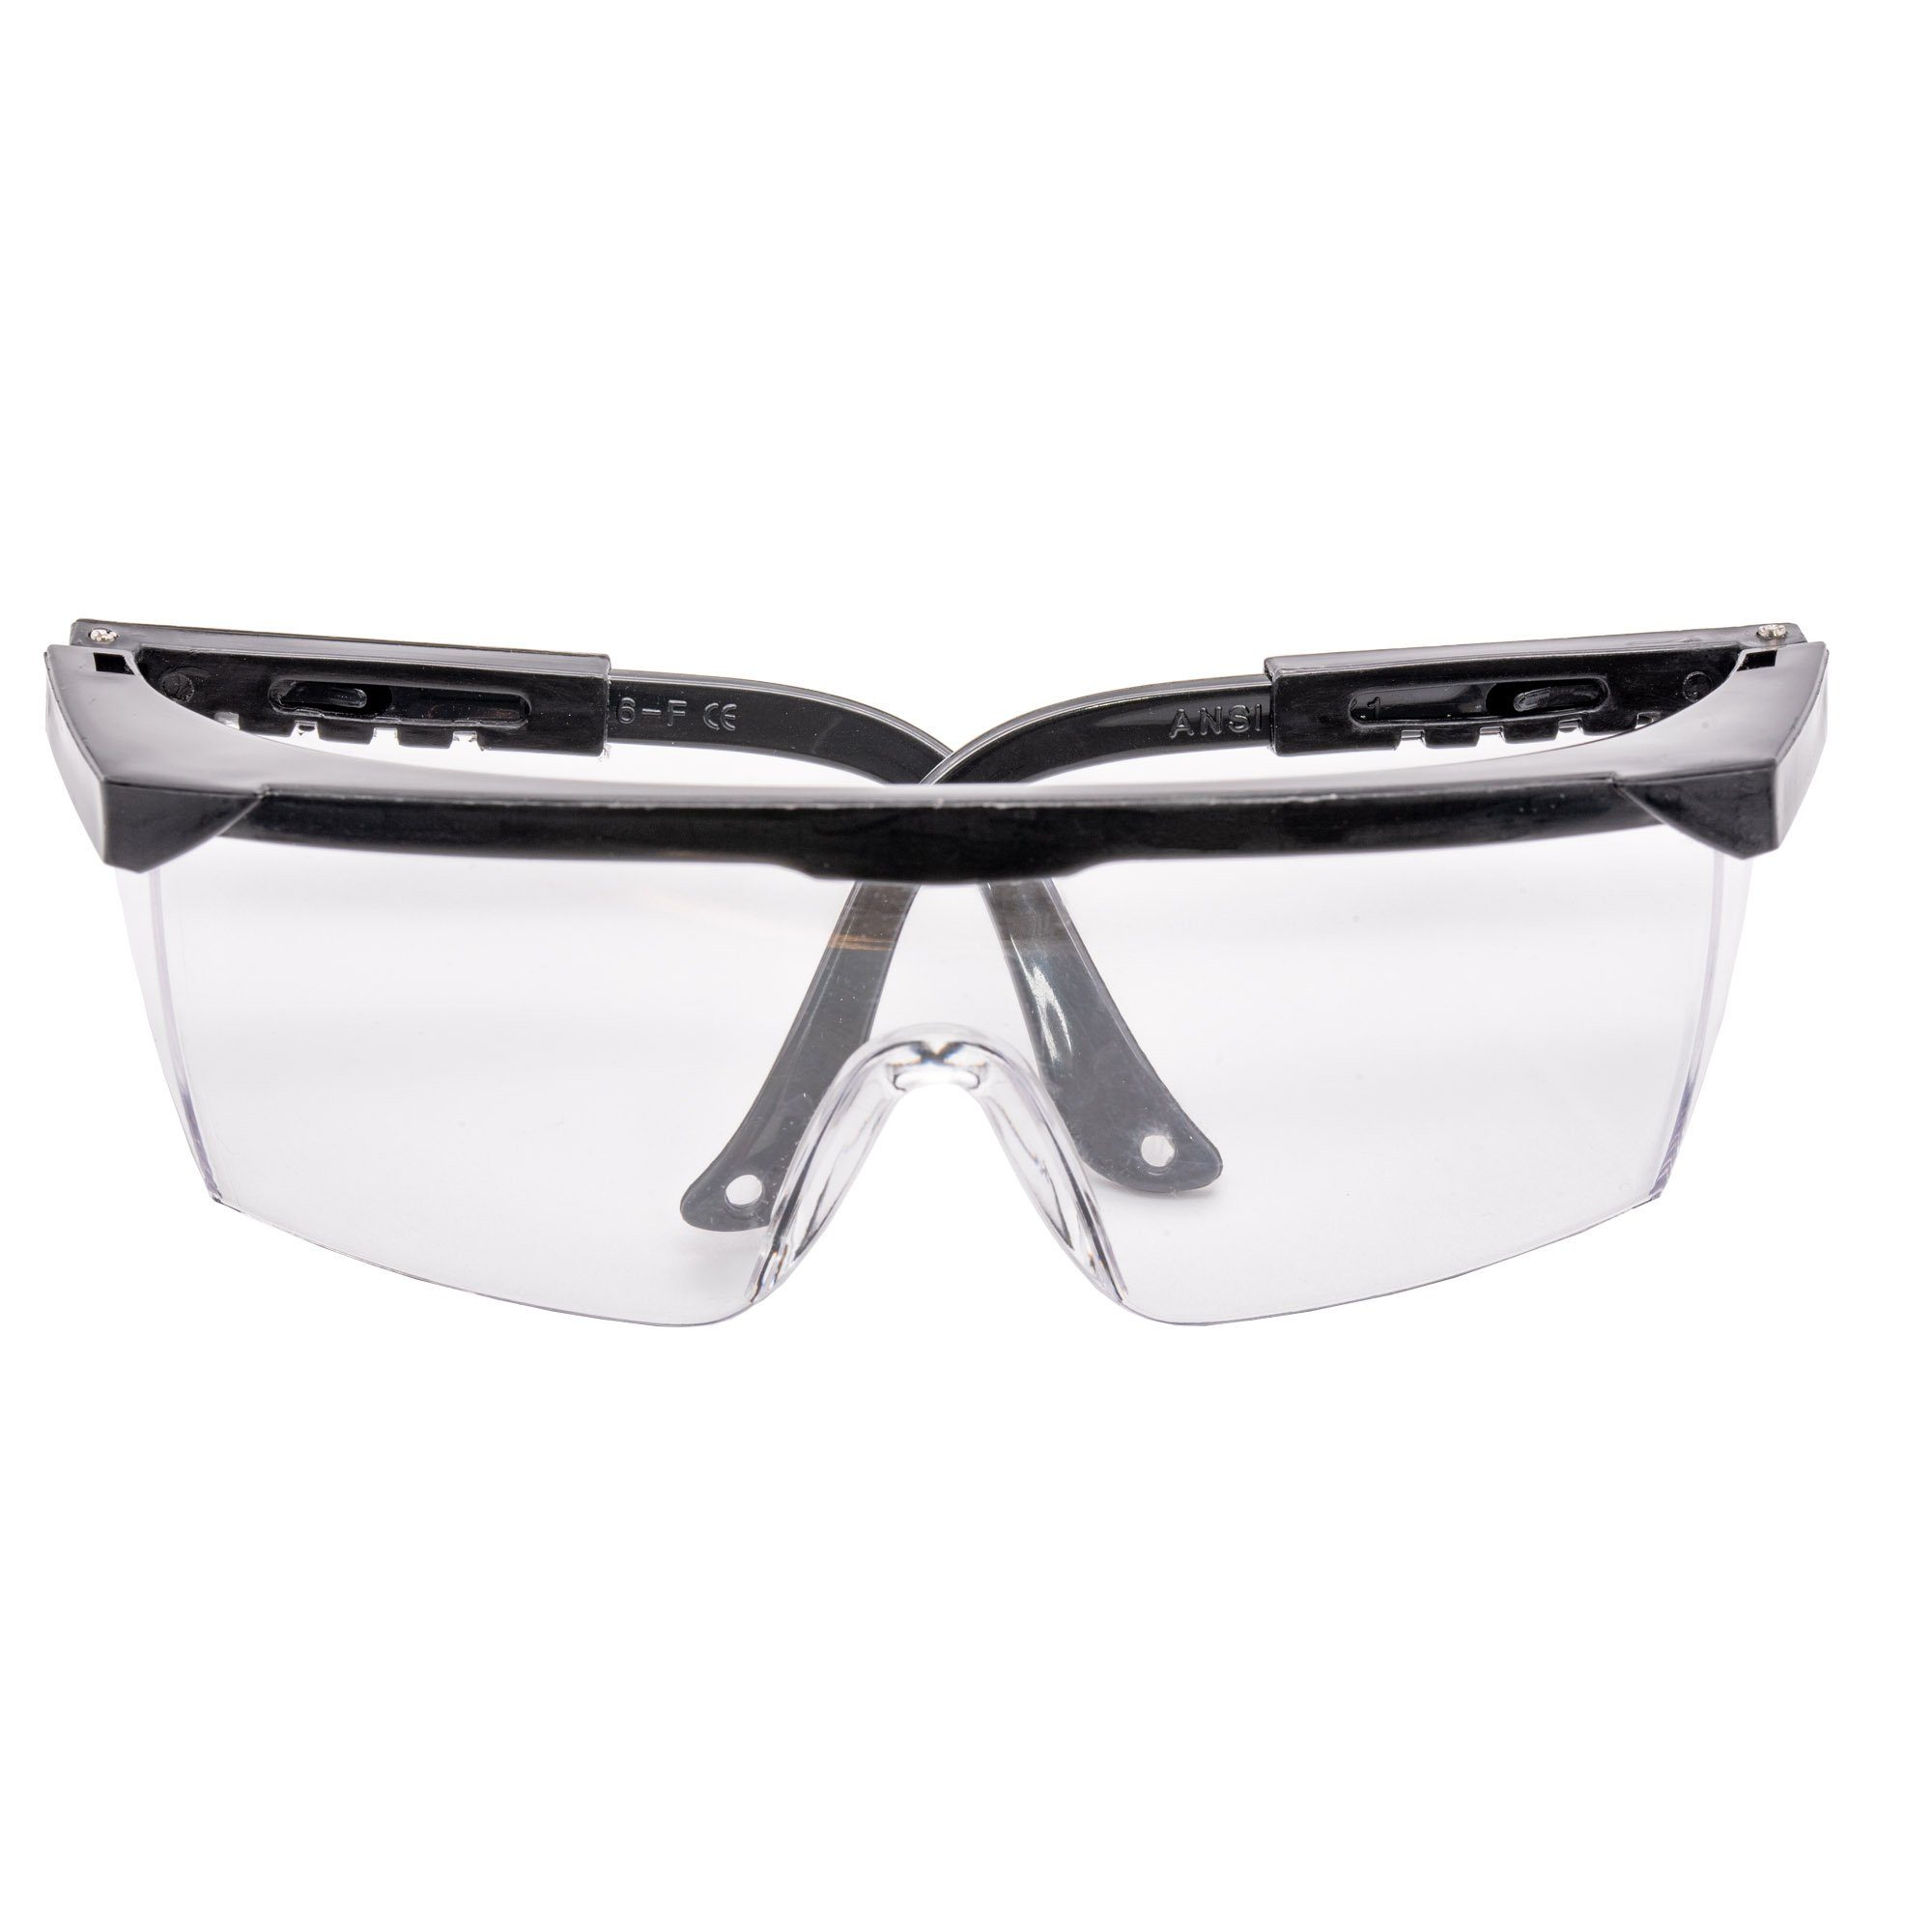 2x Sicherheitsbrille Arbeitsbrille conkor Arbeitsschutzbrille, Arbeitsschutzbrille Schutzbrille Augenschutz,